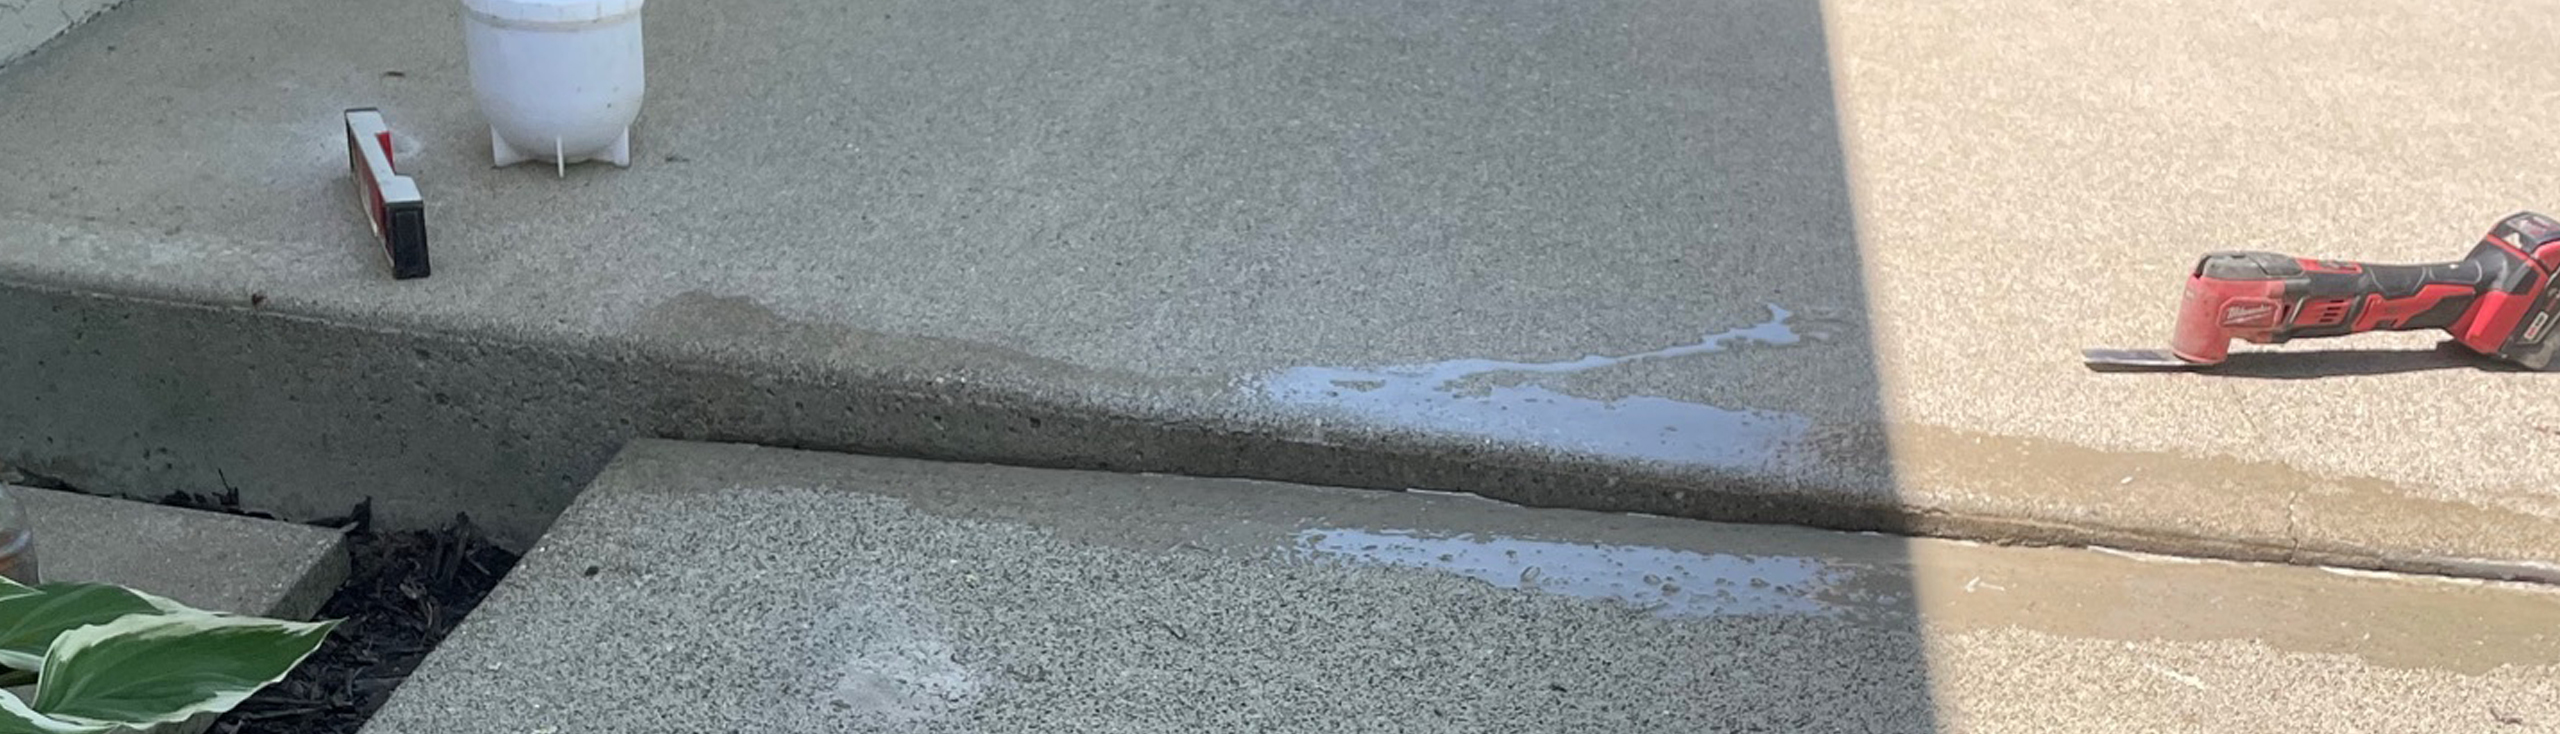 Concrete Driveway Repair | SmartLevel Concrete | Central Ohio | Uneven Slab